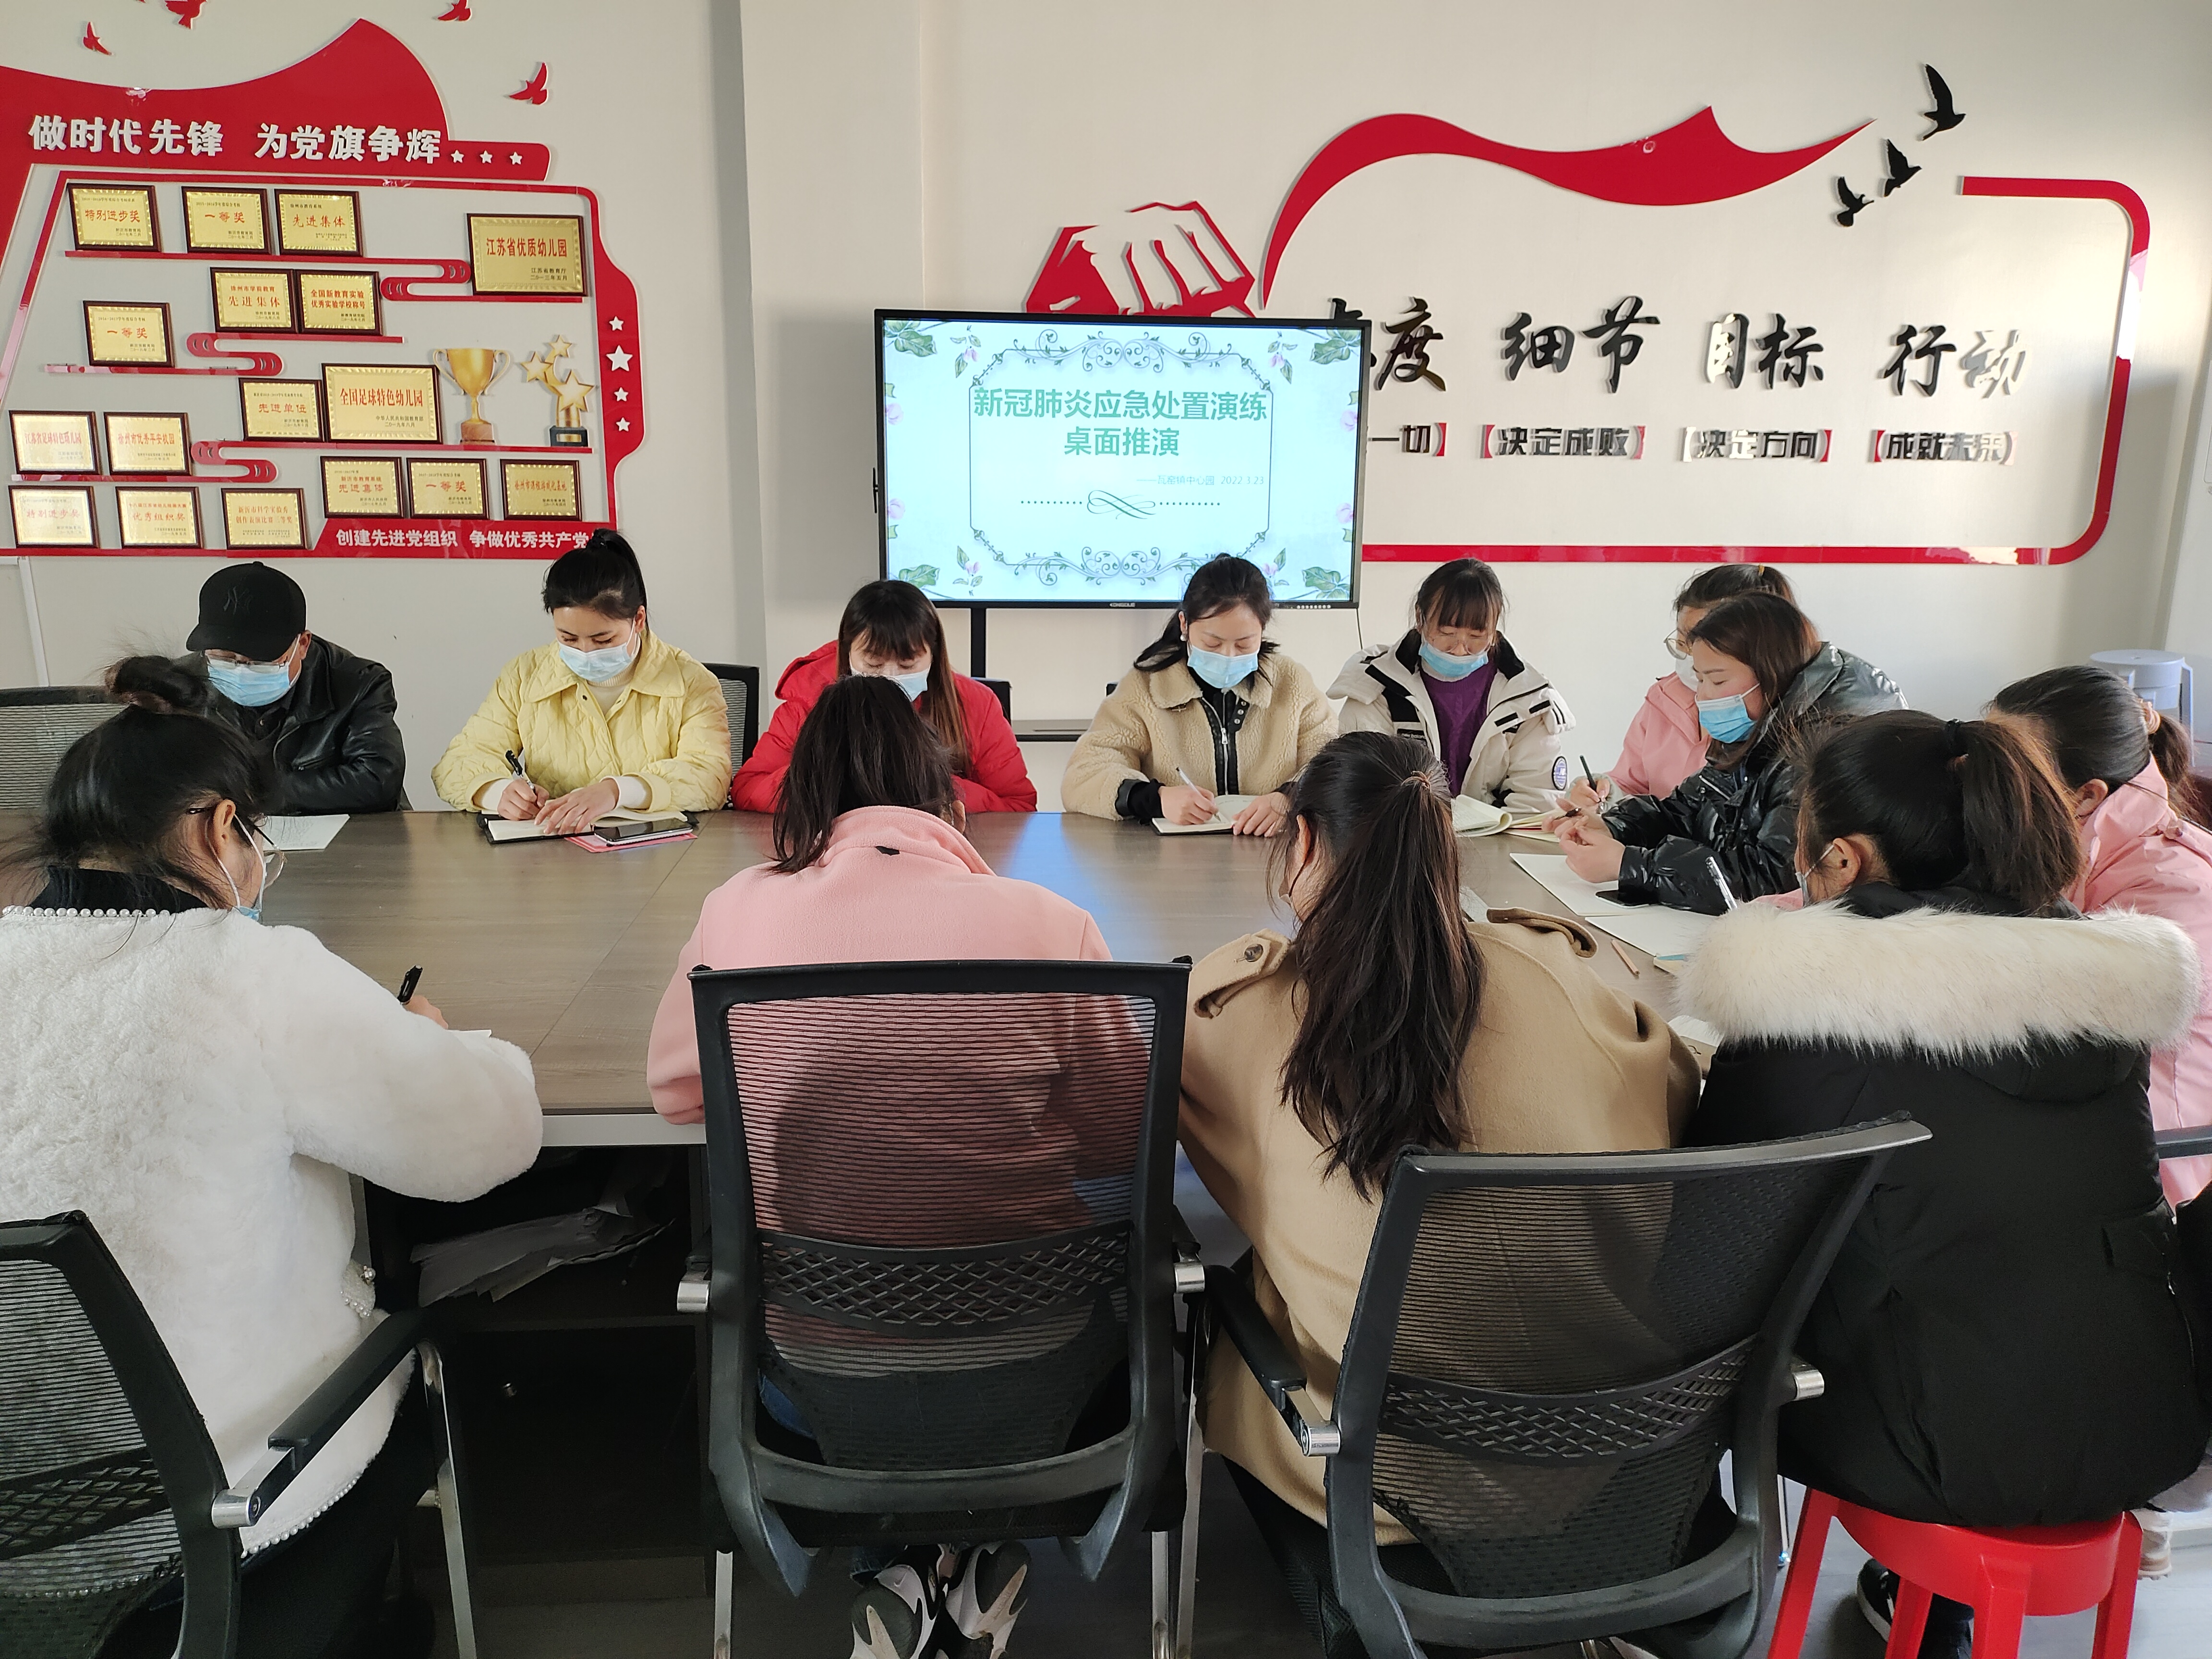 瓦窑镇中心幼儿园新冠疫情应急处置桌面推演